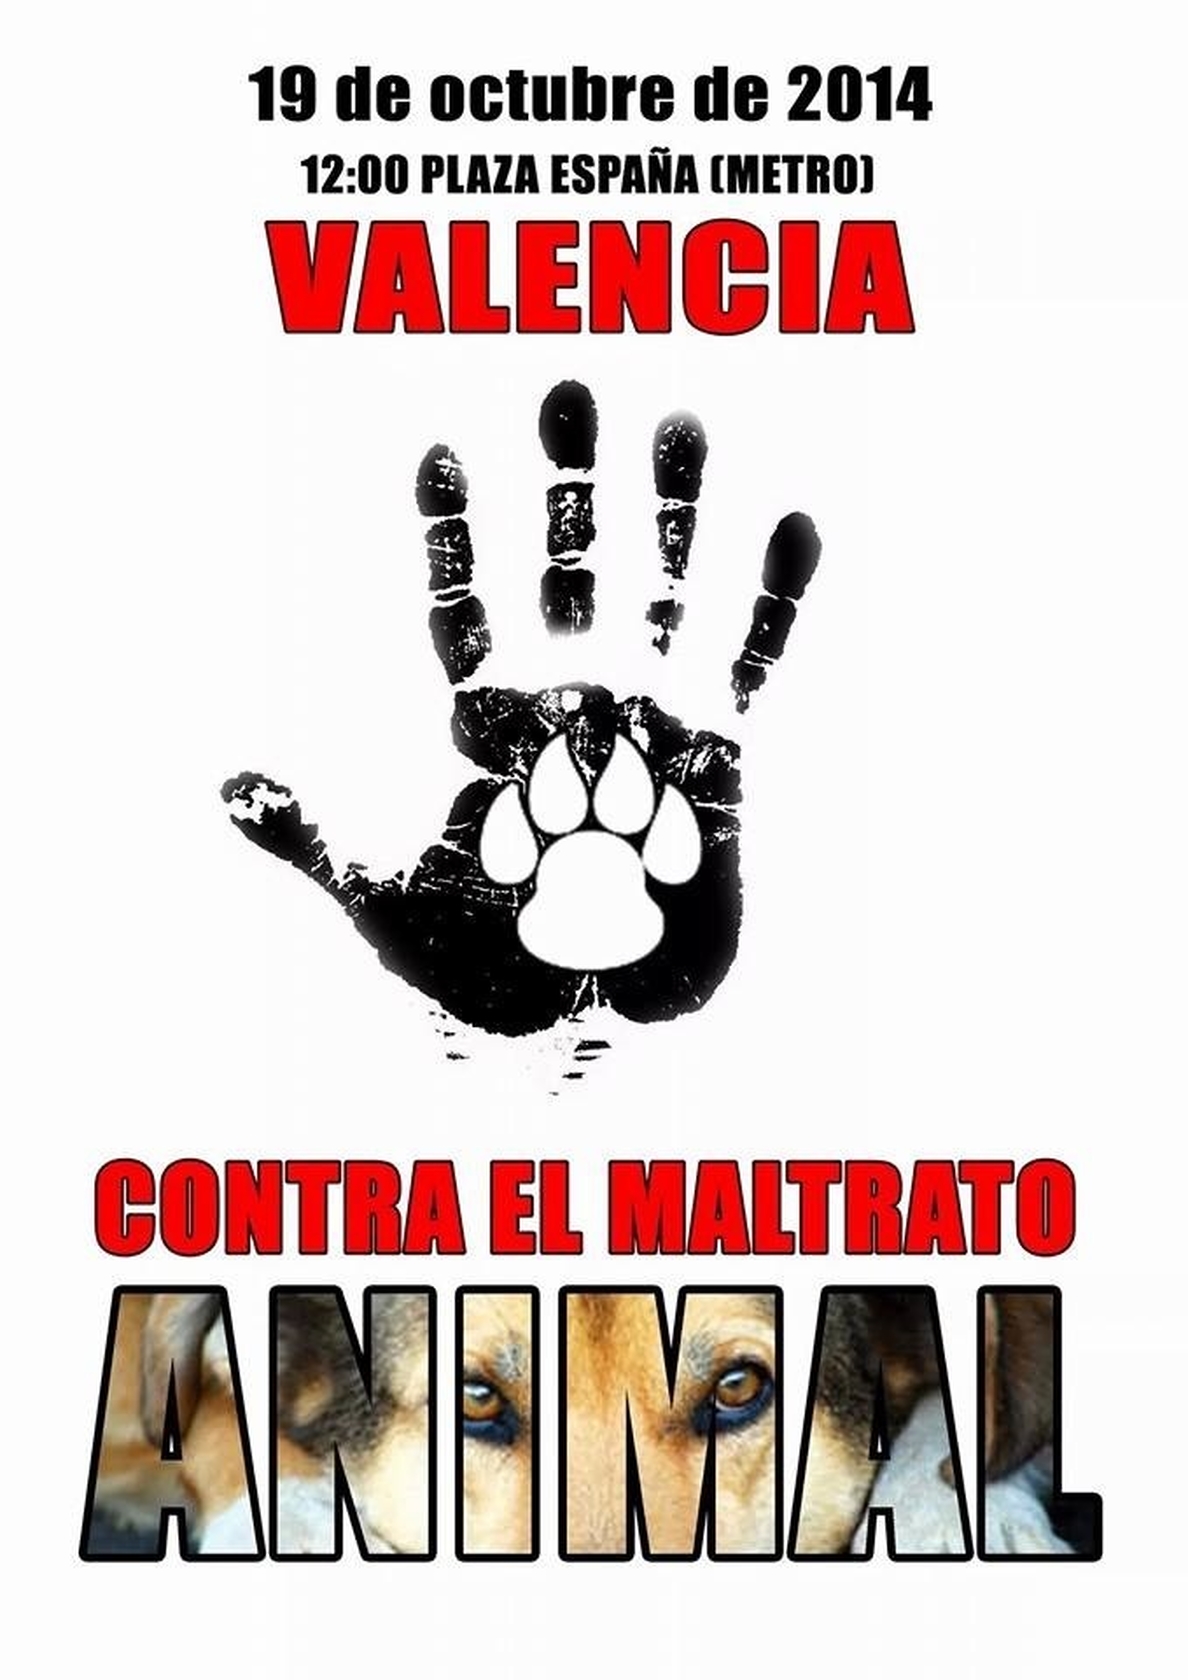 Una manifestación recorrerá Valencia este domingo para exigir políticas y leyes que protejan a los animales